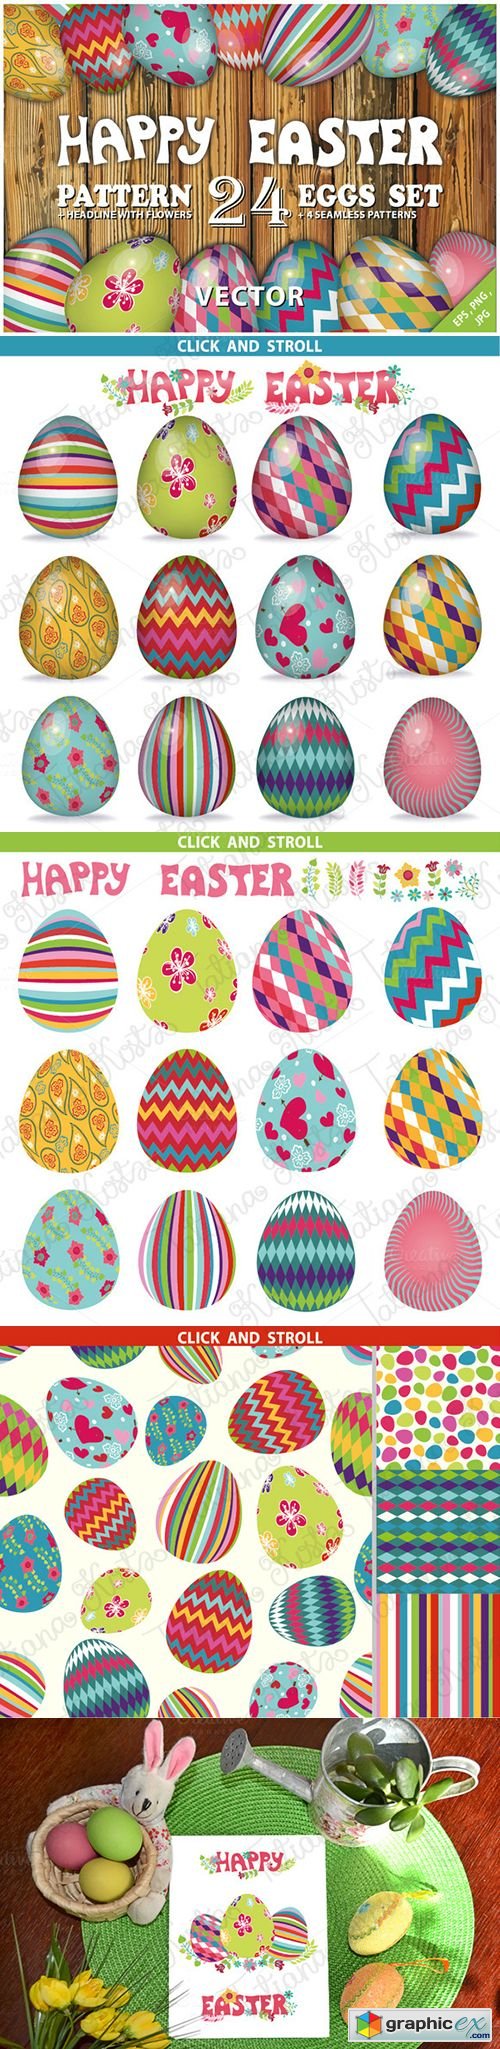 Easter pattern eggs set 01.Vector